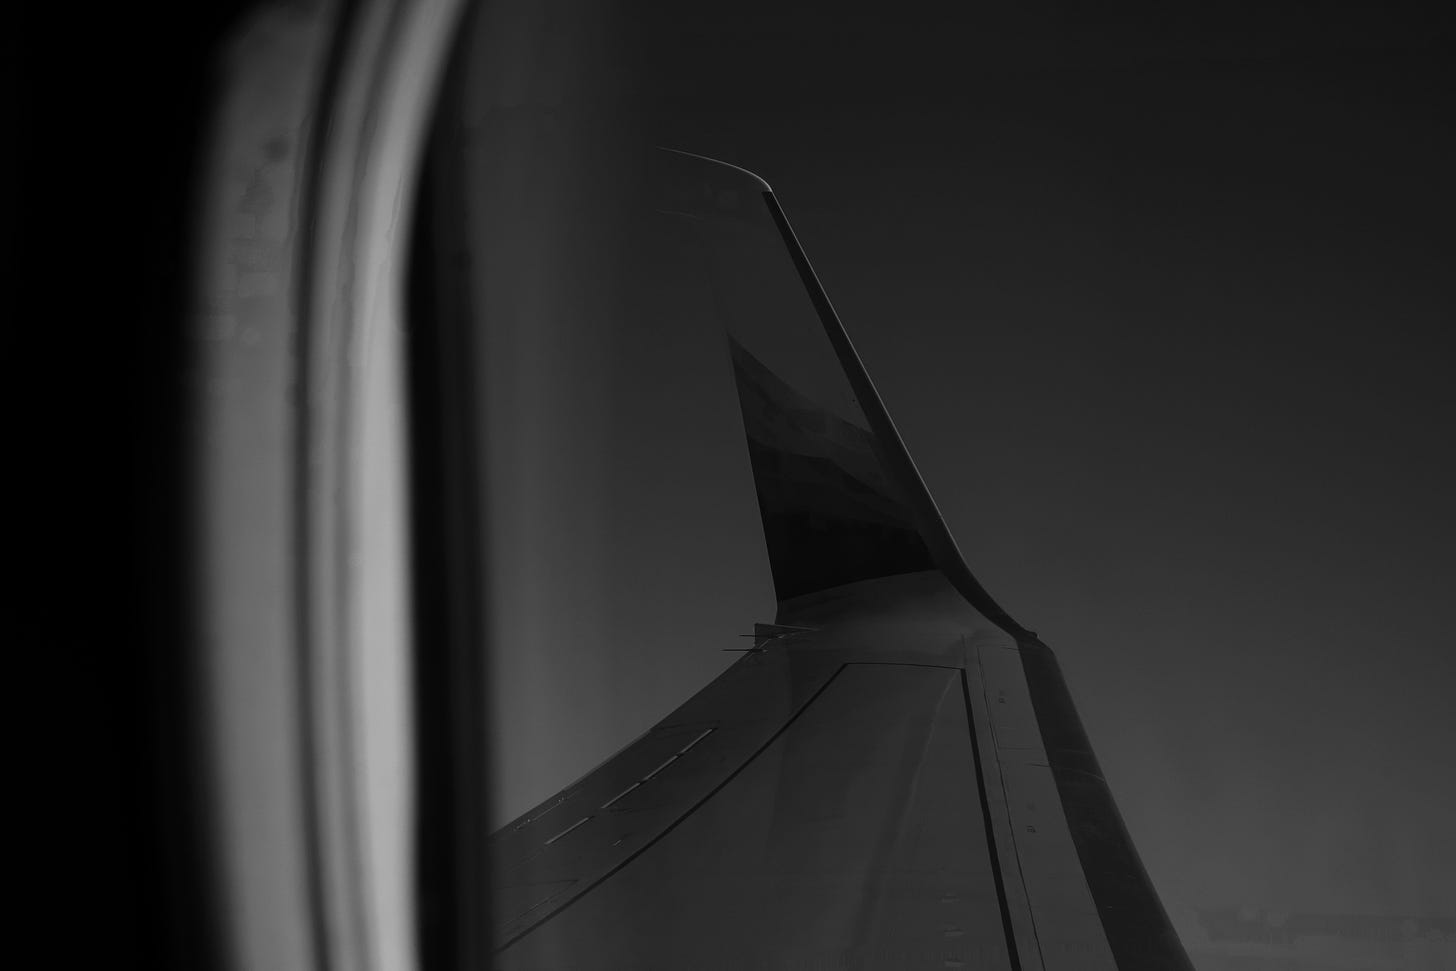 ala di un aereo forografata in bianco e nero attraverso un finestrino